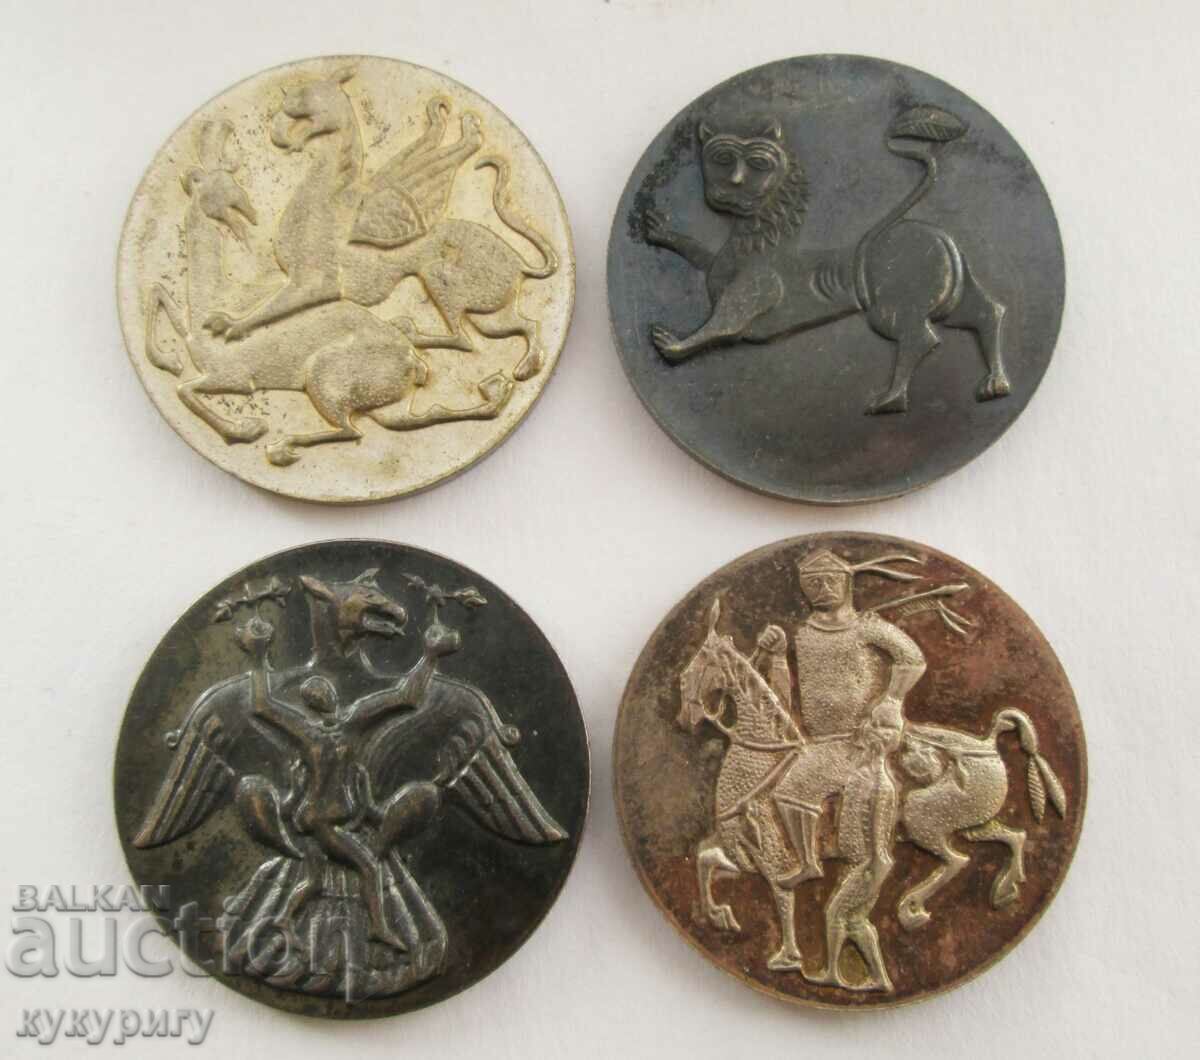 4 κομμάτια παλαιών νομισμάτων του Κοινωνικού Μουσείου πλακέτες NRB